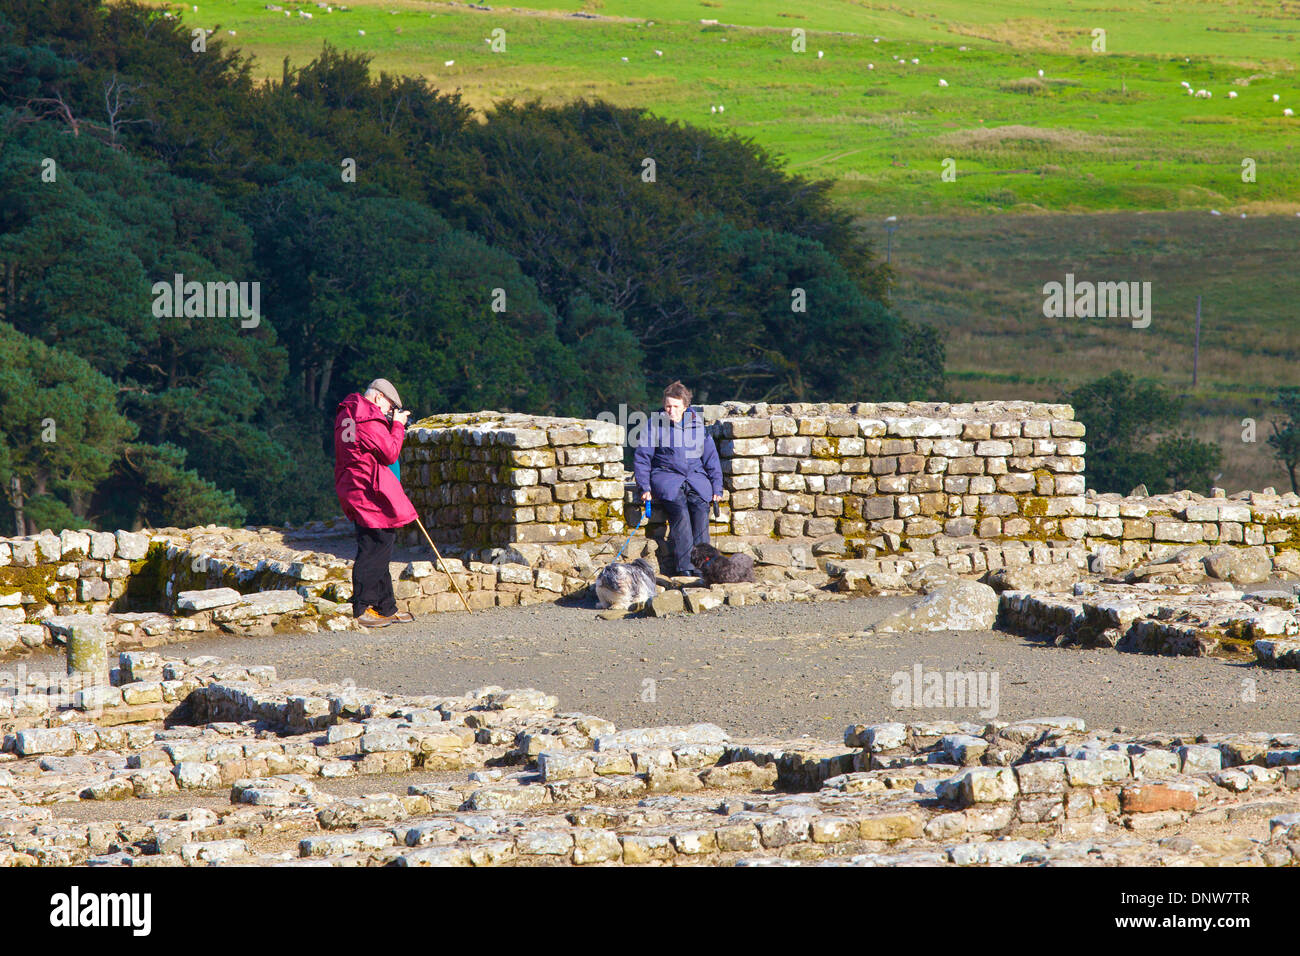 Les touristes à Housteads Roman Fort sur le mur d'Hadrien, Sentier National Northumberland, Angleterre Royaume-Uni Grande-Bretagne Banque D'Images